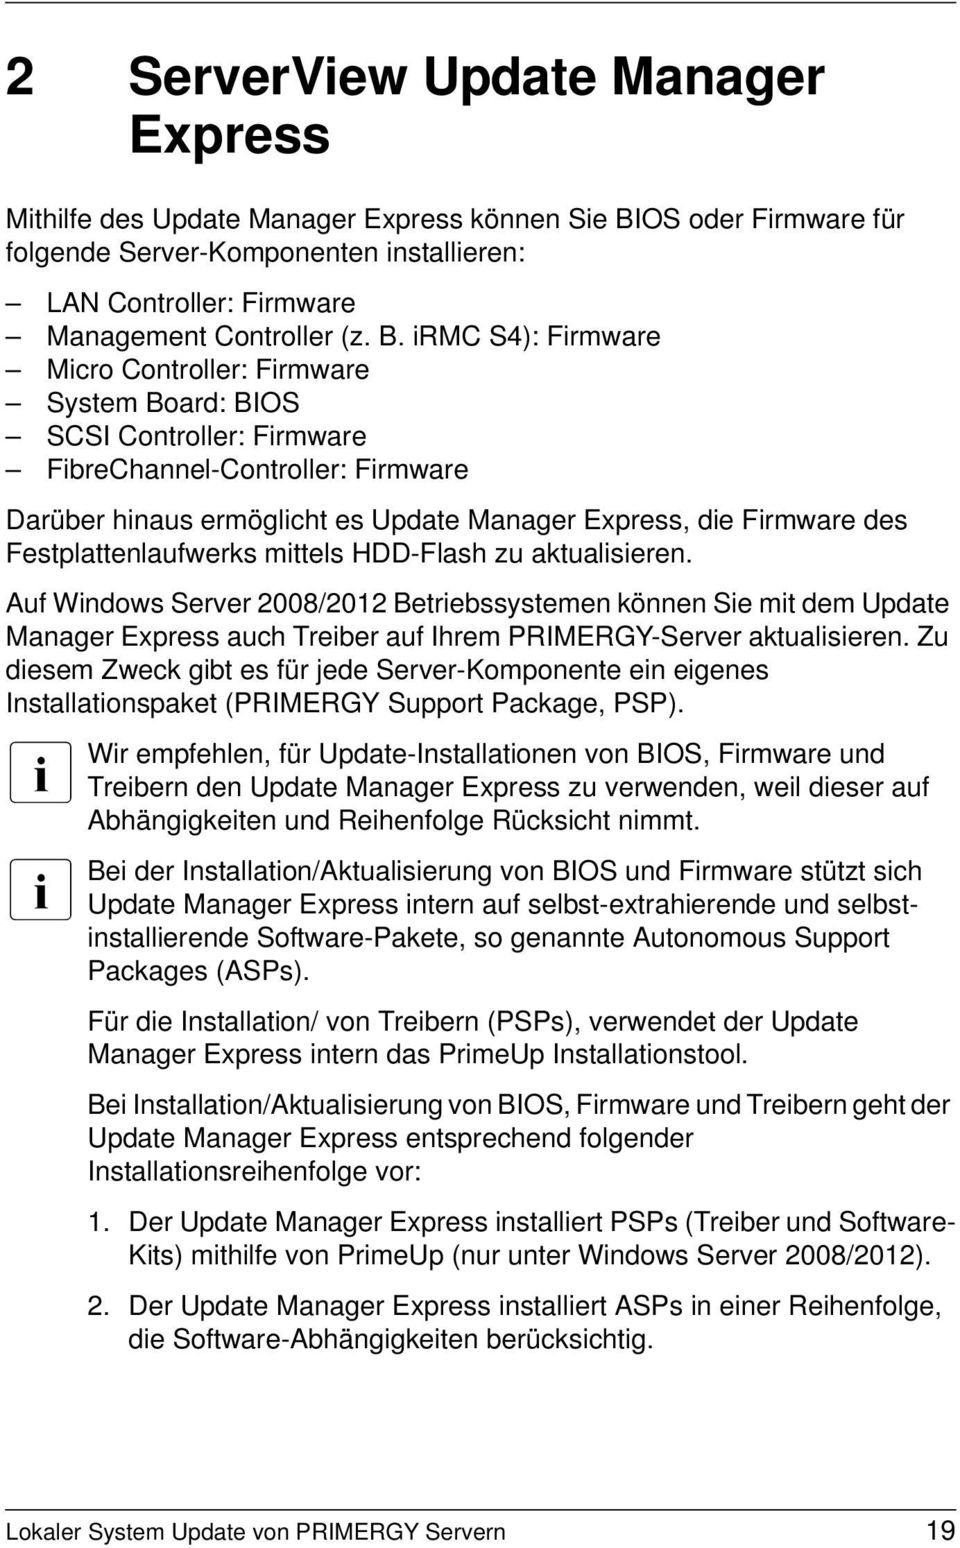 Festplattenlaufwerks mittels HDD-Flash zu aktualisieren. Auf Windows Server 2008/2012 Betriebssystemen können Sie mit dem Update Manager Express auch Treiber auf Ihrem PRIMERGY-Server aktualisieren.